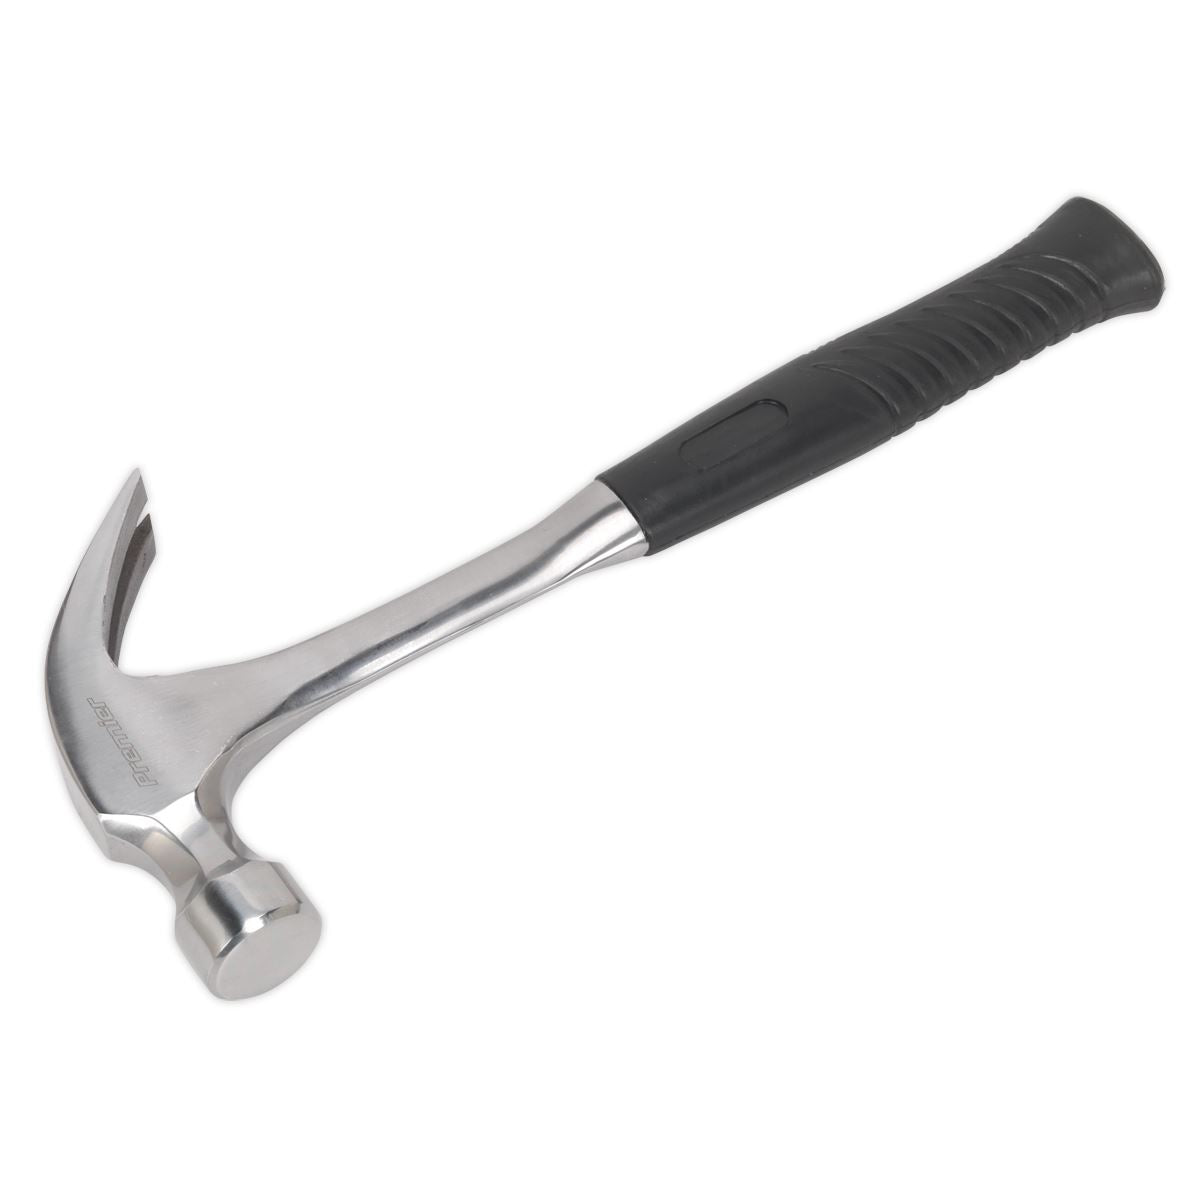 Sealey Premier Claw Hammer 20oz One-Piece Steel Shaft